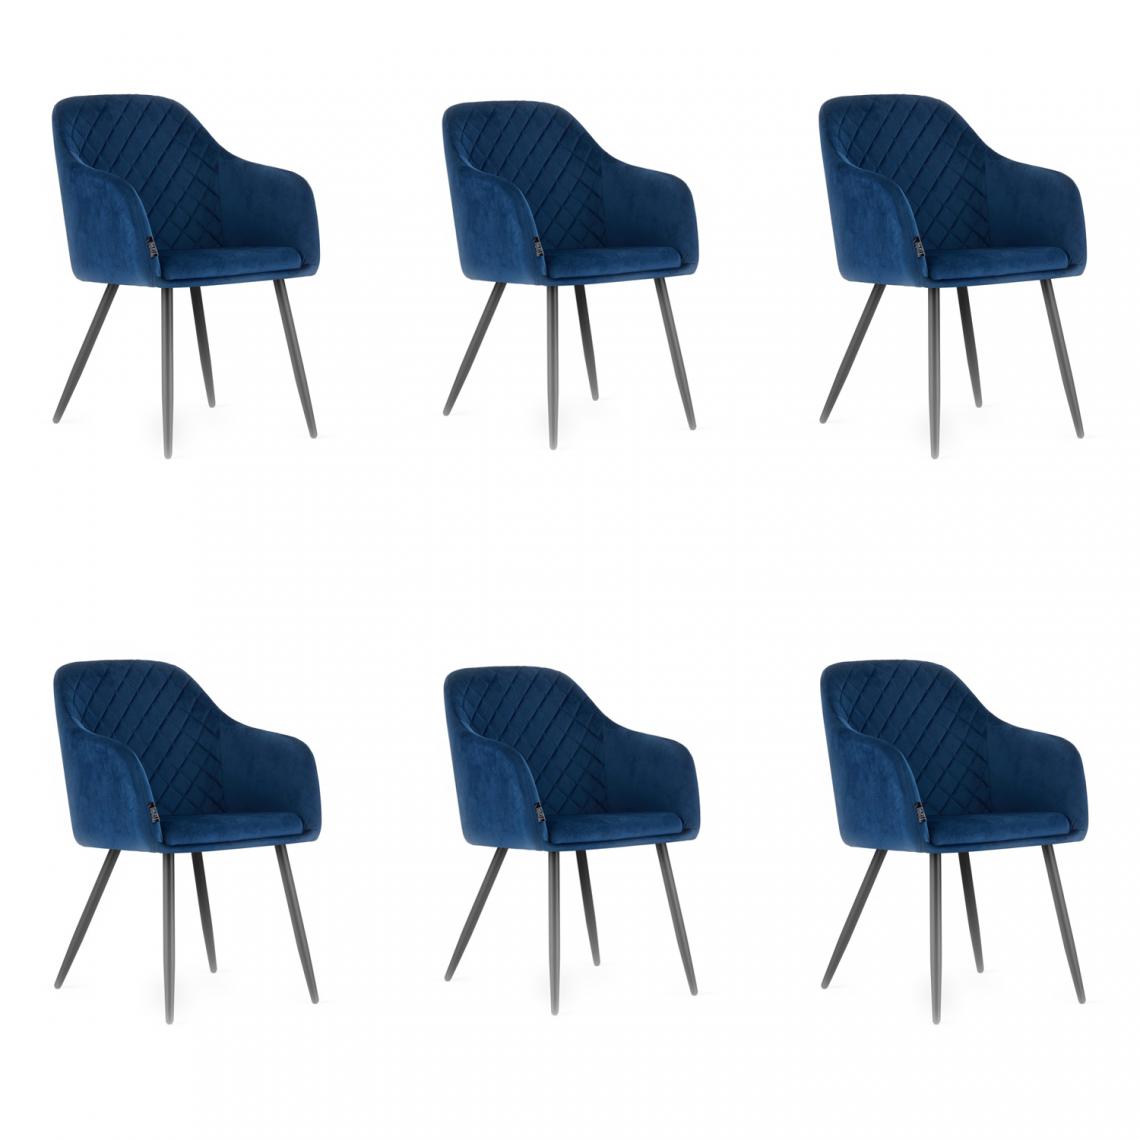 Hucoco - LECCOL - Lot de 6 chaises style glamour salon/salle à manger - 84.5x58.5x52.5 cm - Fauteuil de table - Bleu - Chaises